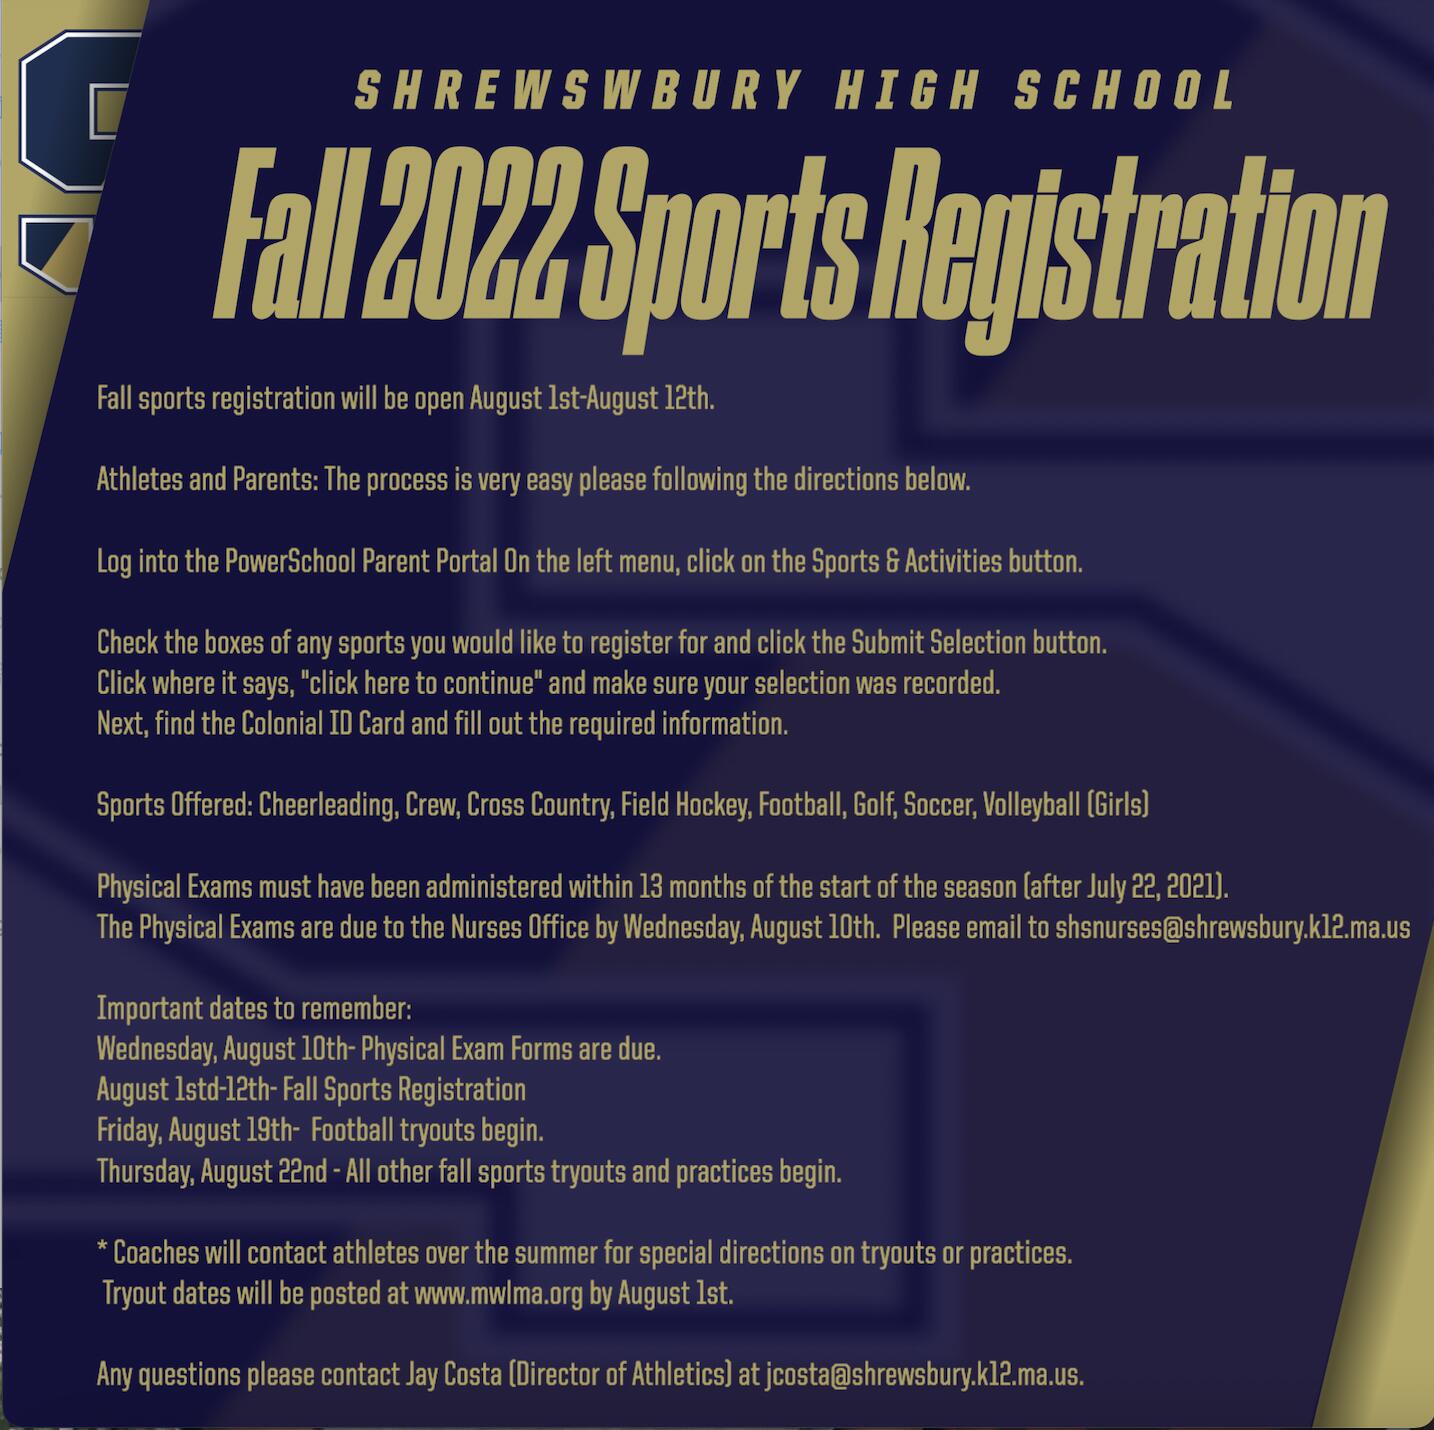 Fall 2022 Sports Registration